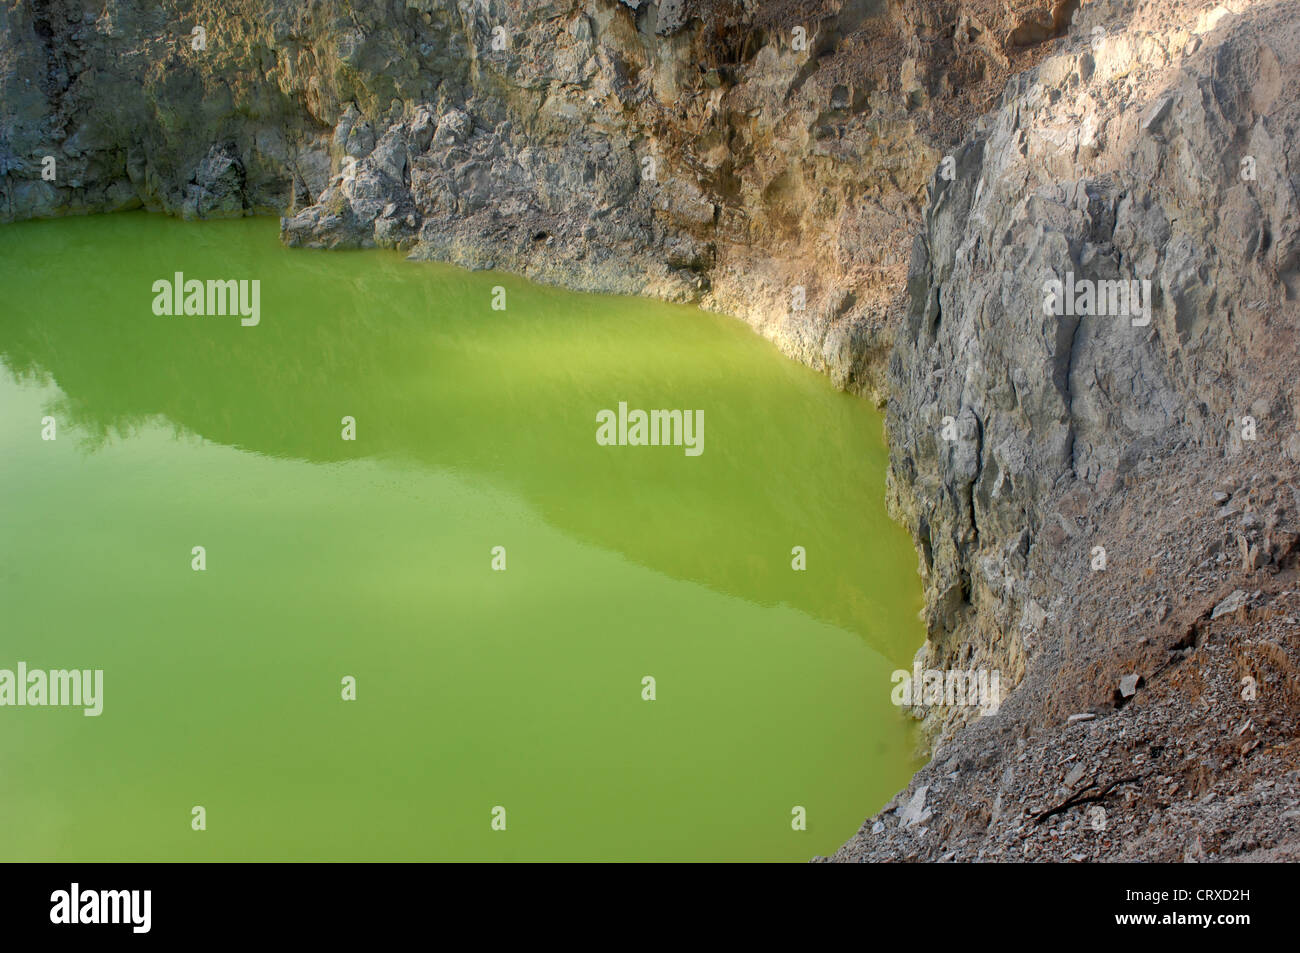 Piscine Grotte du diable au wai-O-Tapu zone géothermique en Nouvelle Zélande Banque D'Images